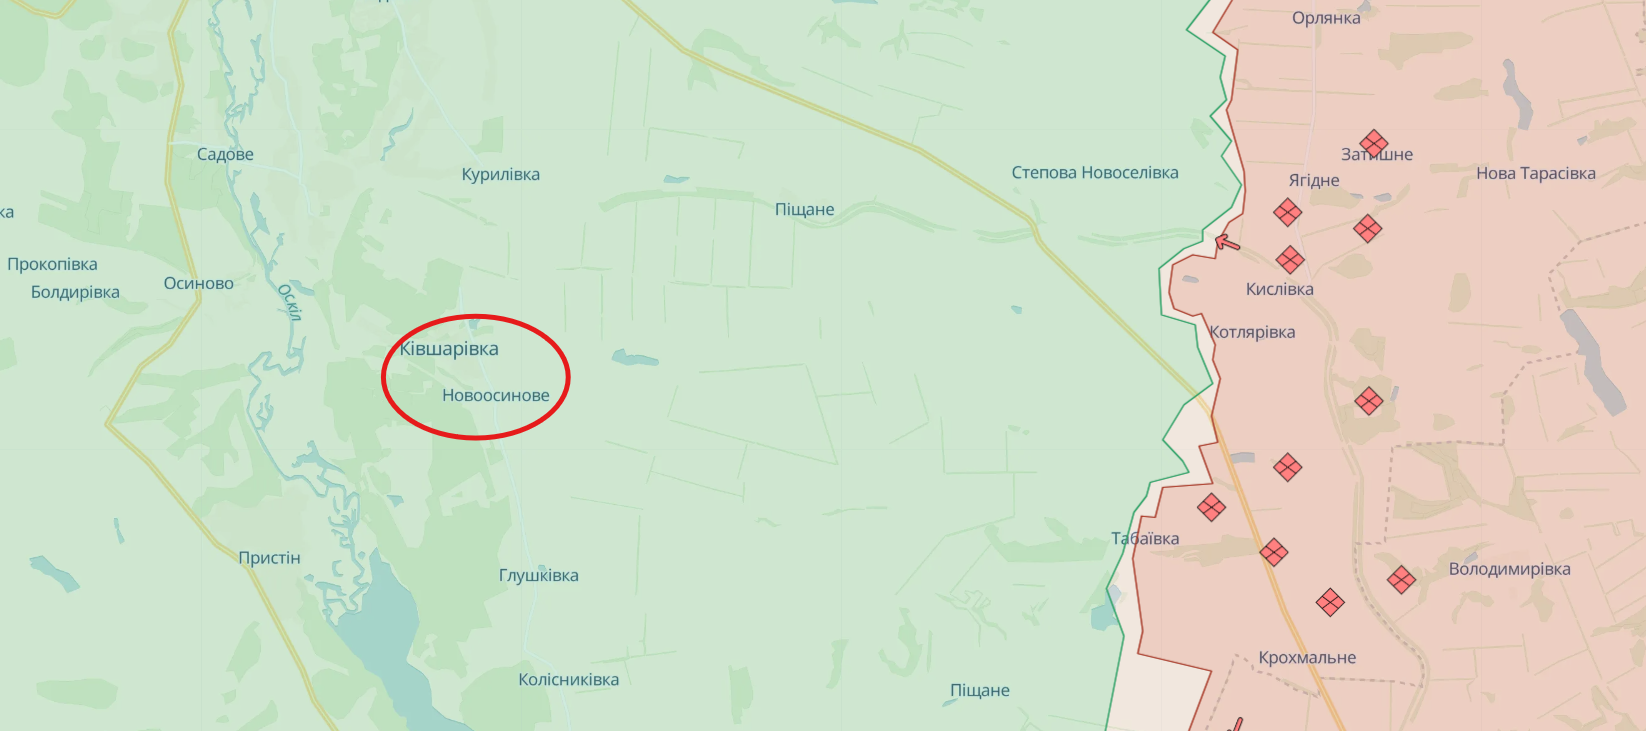 Rosyjska armia uderza w rejon Kupiańska w obwodzie charkowskim: 5 zabitych, 9 rannych